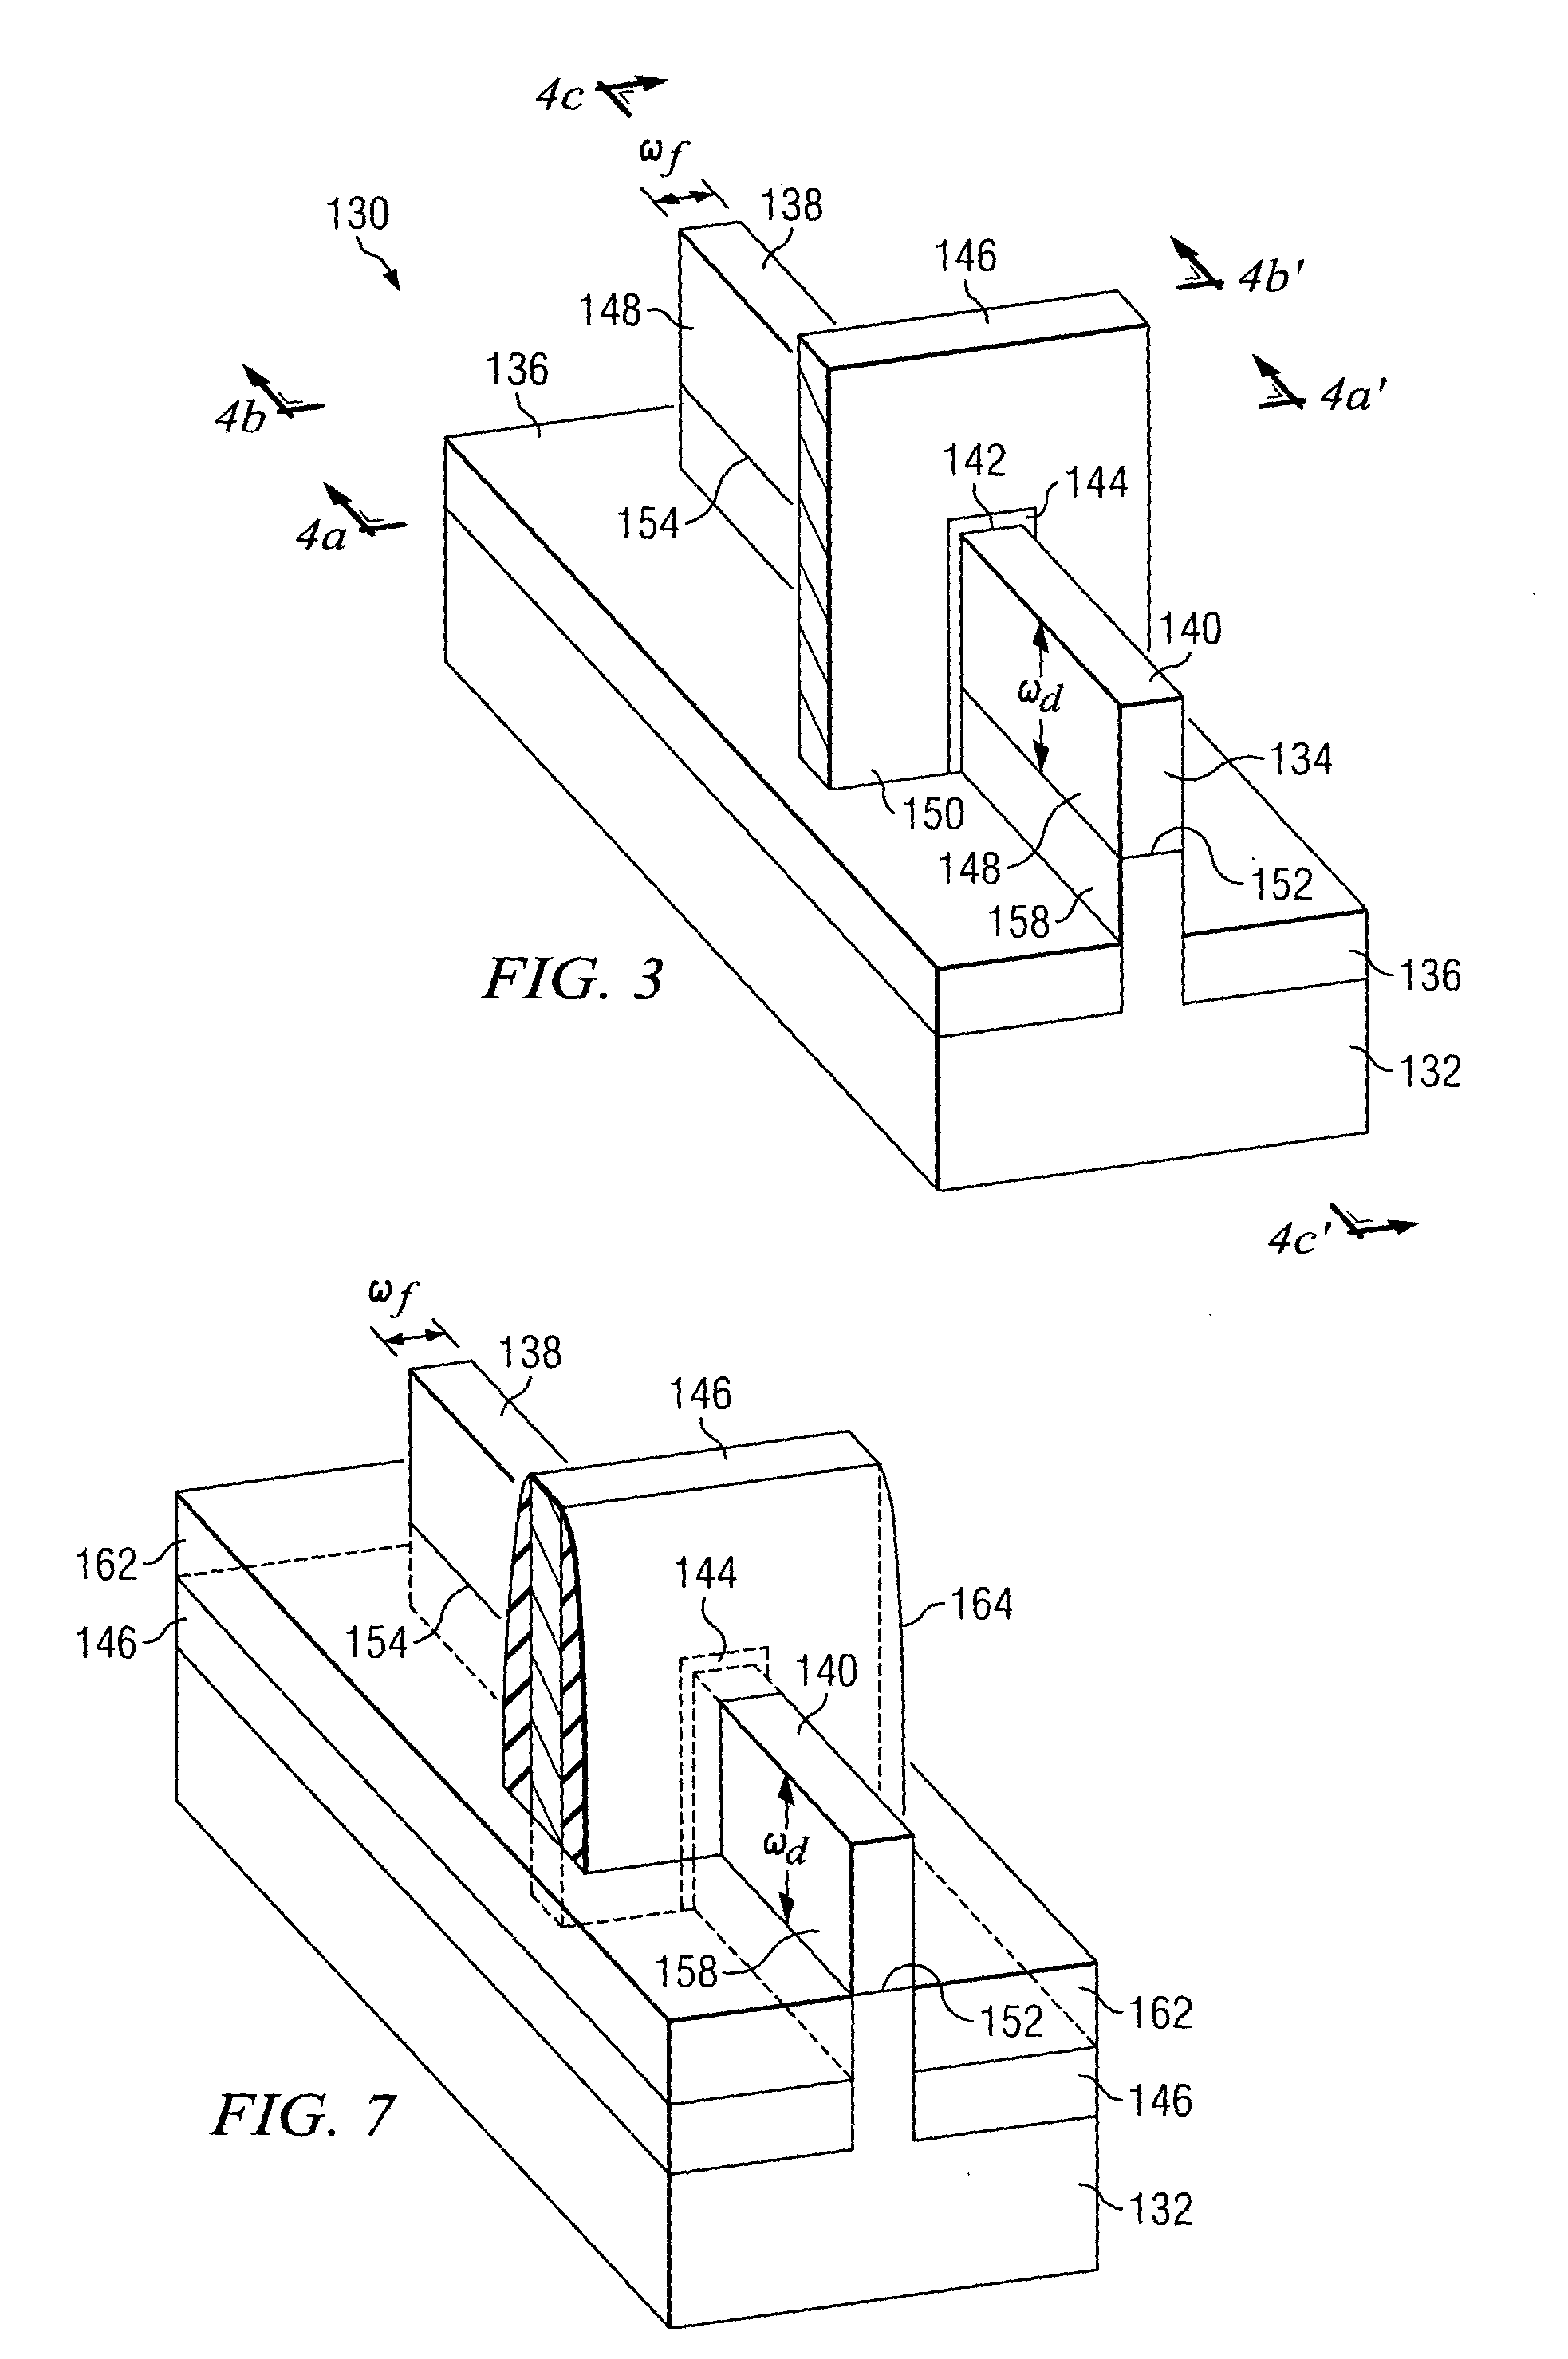 Multiple-gate transistors formed on bulk substrates